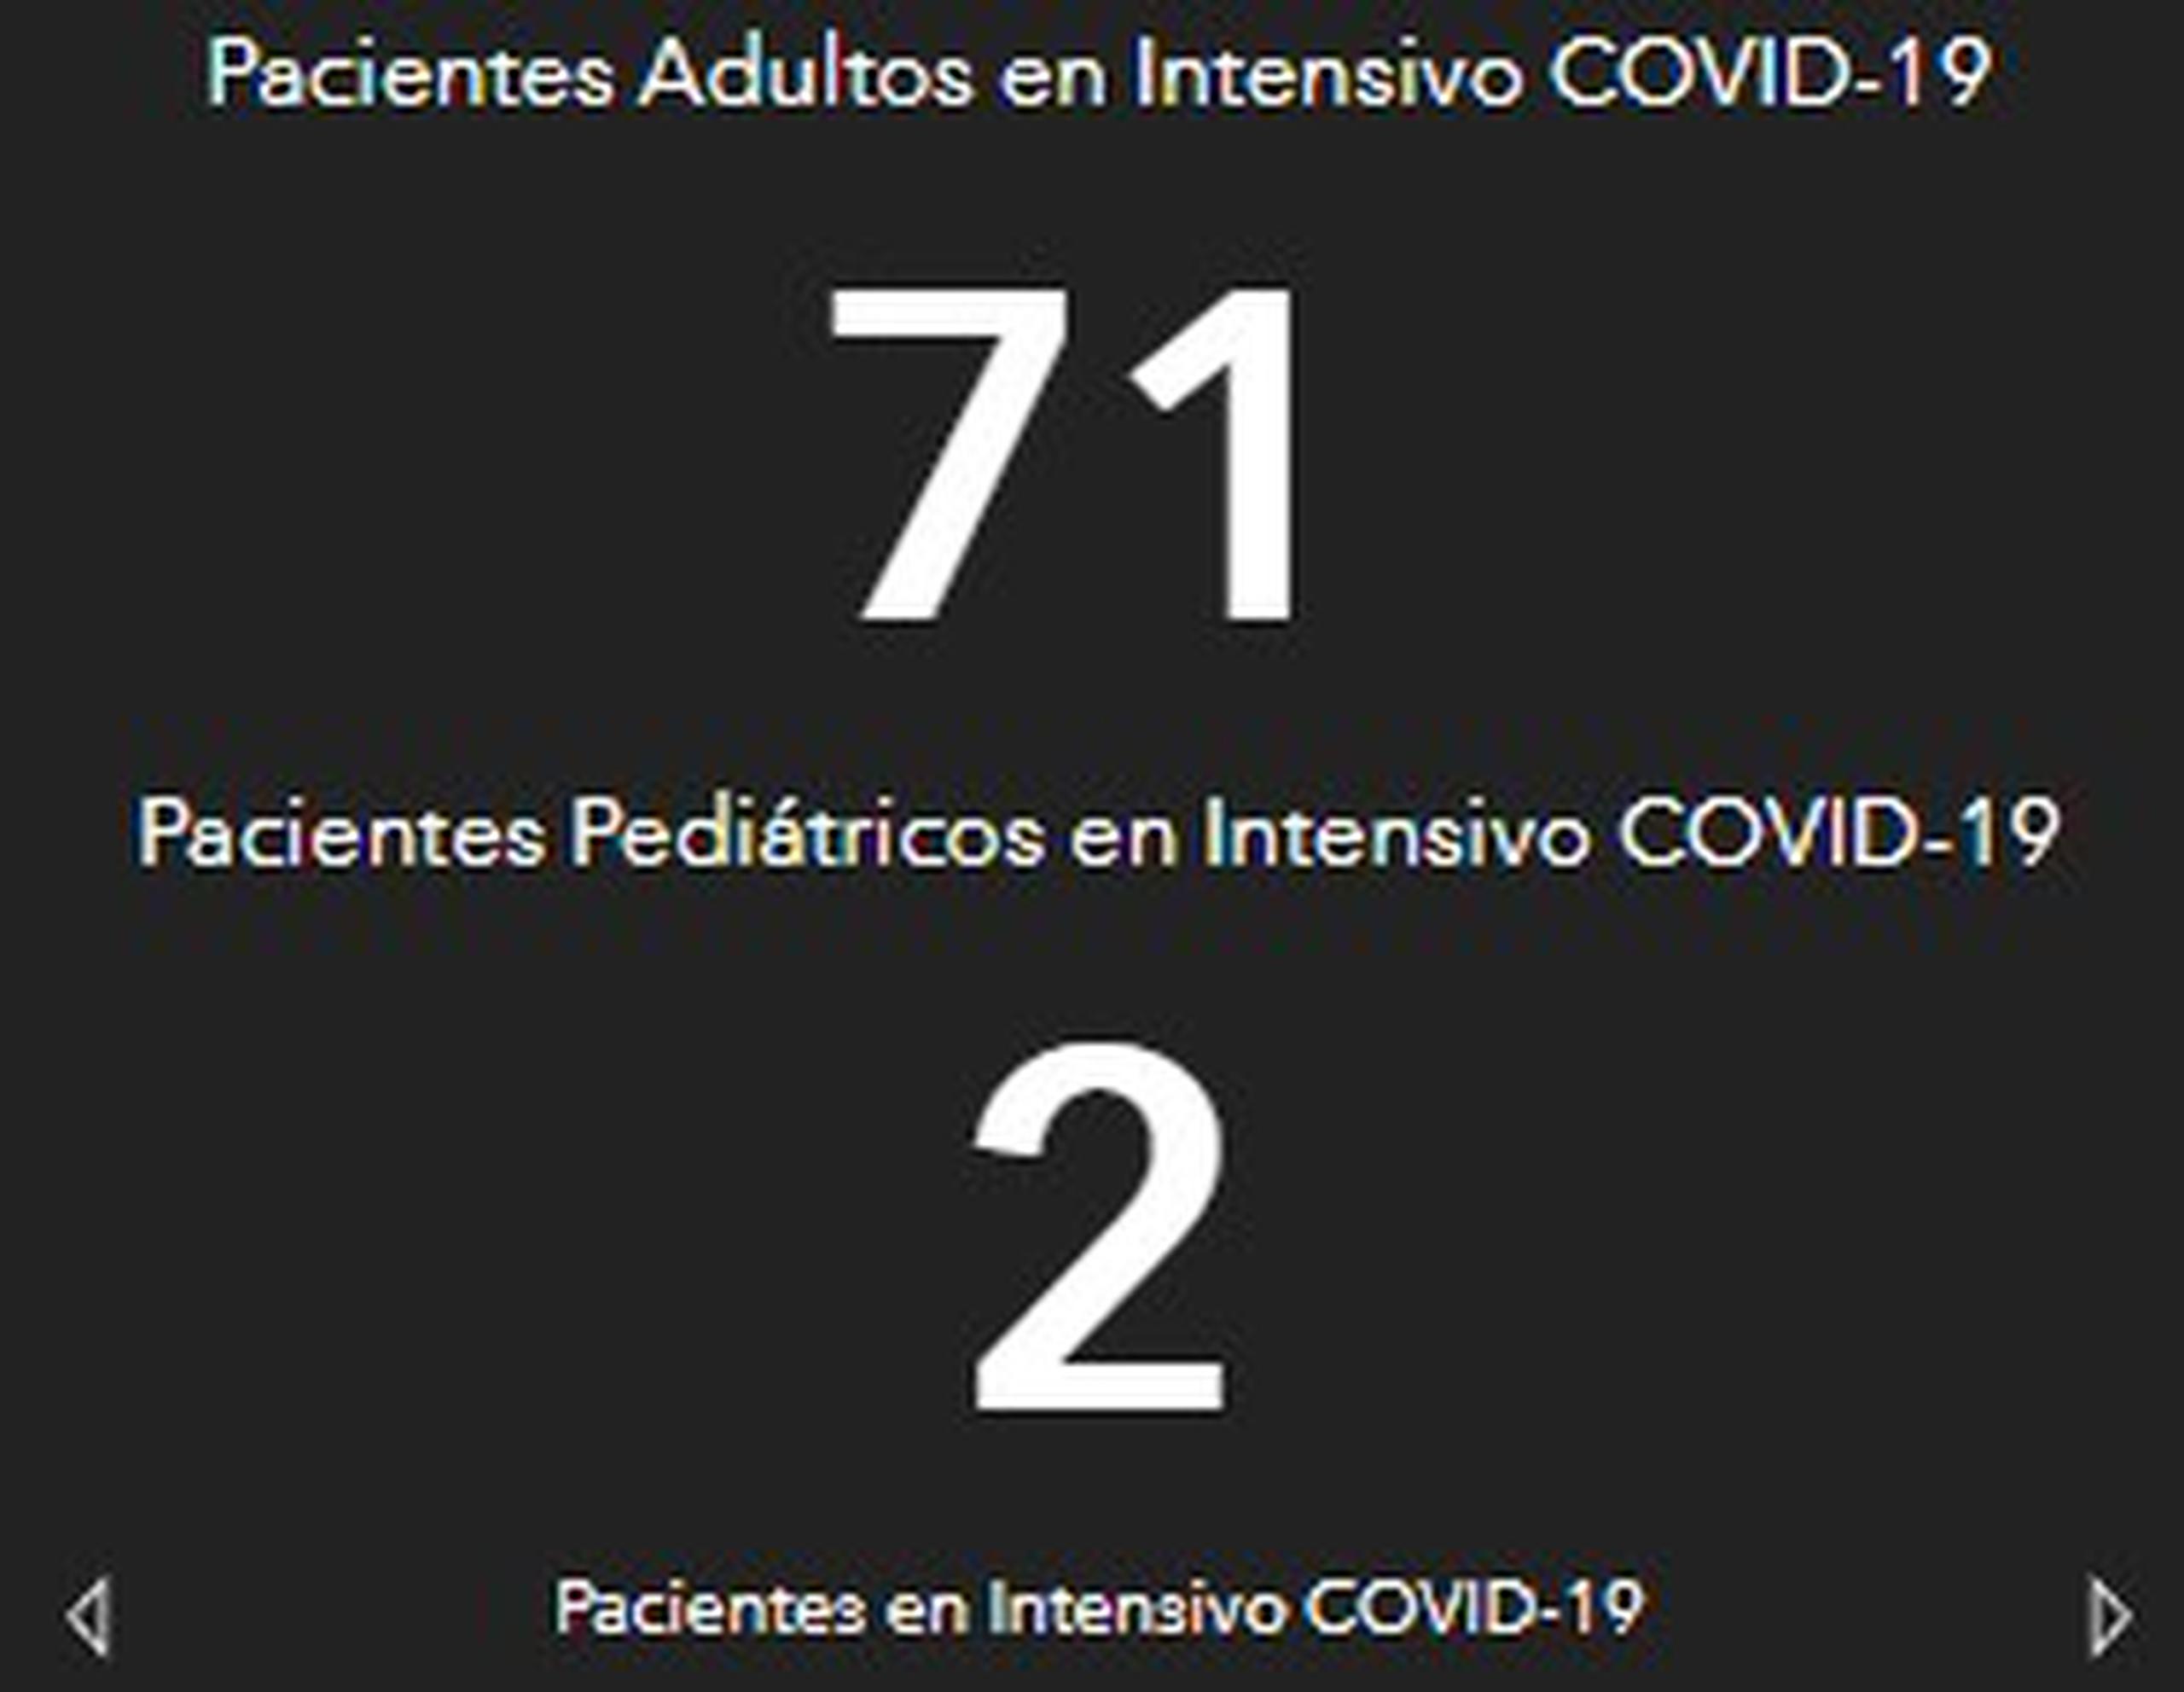 Captura del "dashboard" del Departamento de Salud donde indica la cantidad de pacientes pediátricos en intensivo por COVID-19.